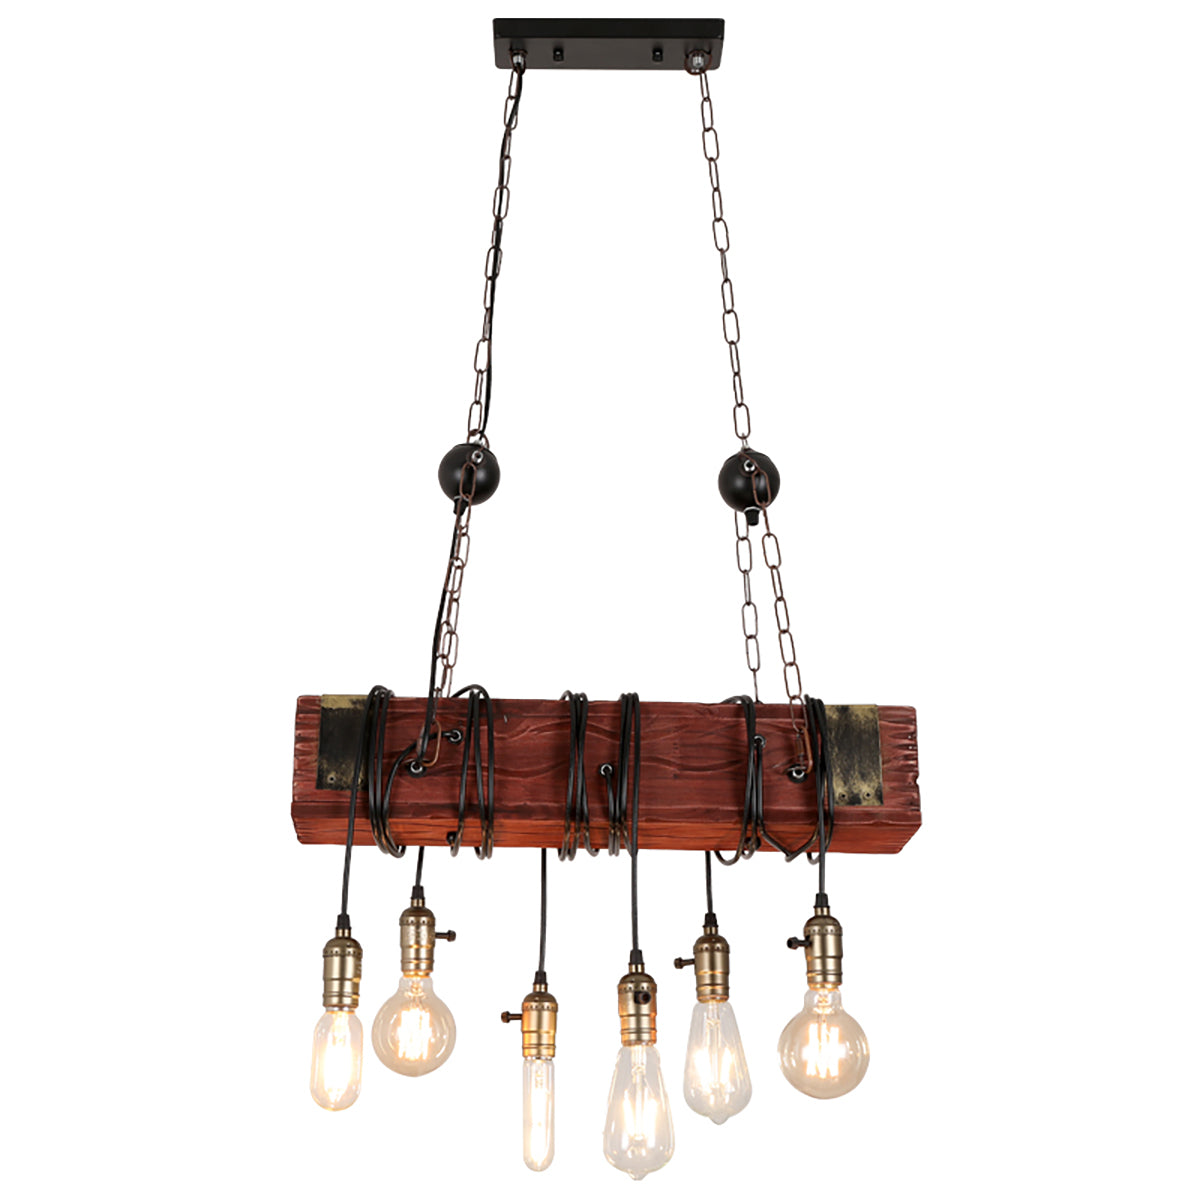 E26x6 Light Wooden Chandelier Industry Restaurant Pendant Lamp Art Ceiling Decor AC110-240V